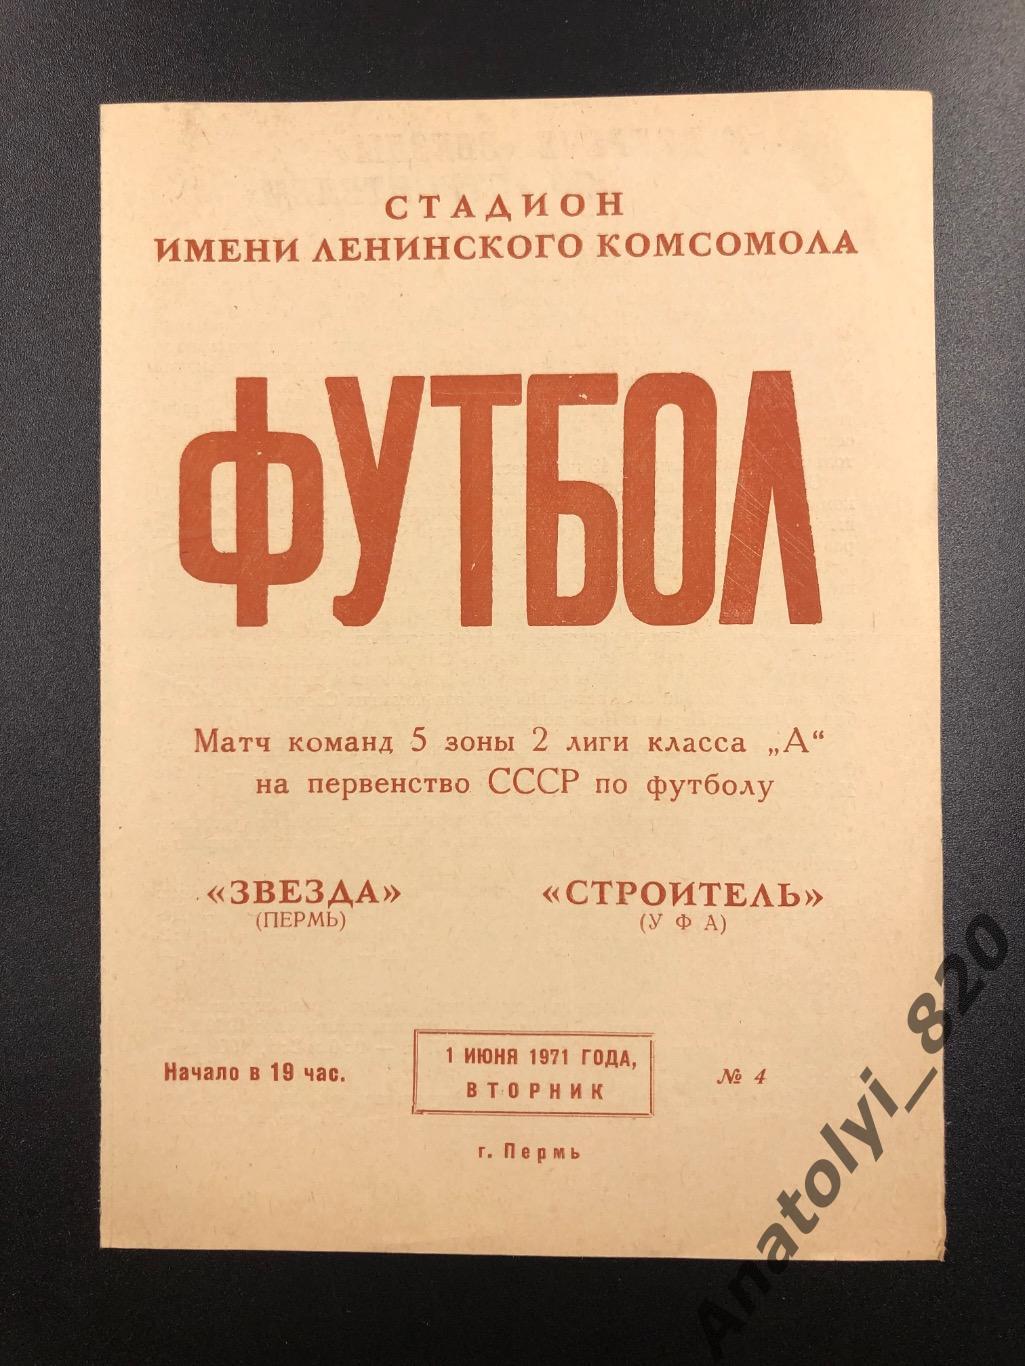 Звезда Пермь - Строитель Уфа, 01.06.1971